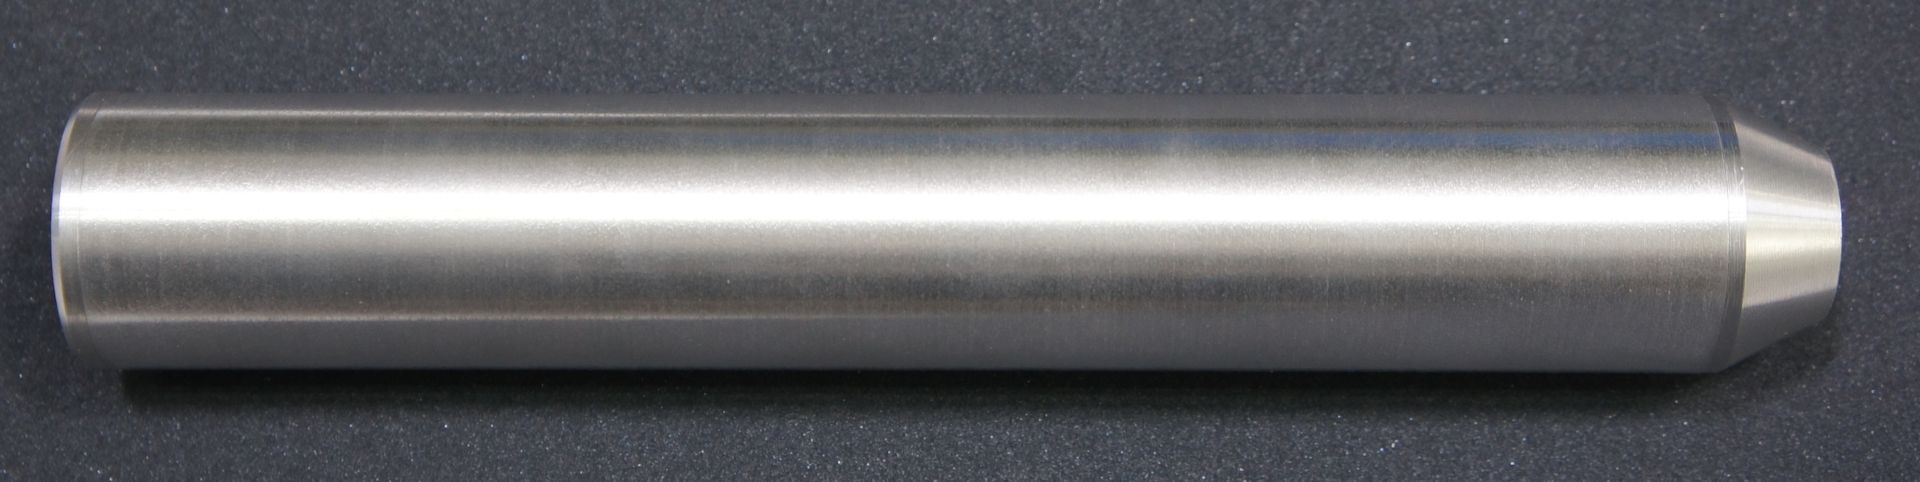 blanker Schalldämpfer aus gebürstetem Aluminium für Druckluftwaffen im Kal. 4,5 und 5,5mm mit Laufgewinde 0.5 Zoll UNF20